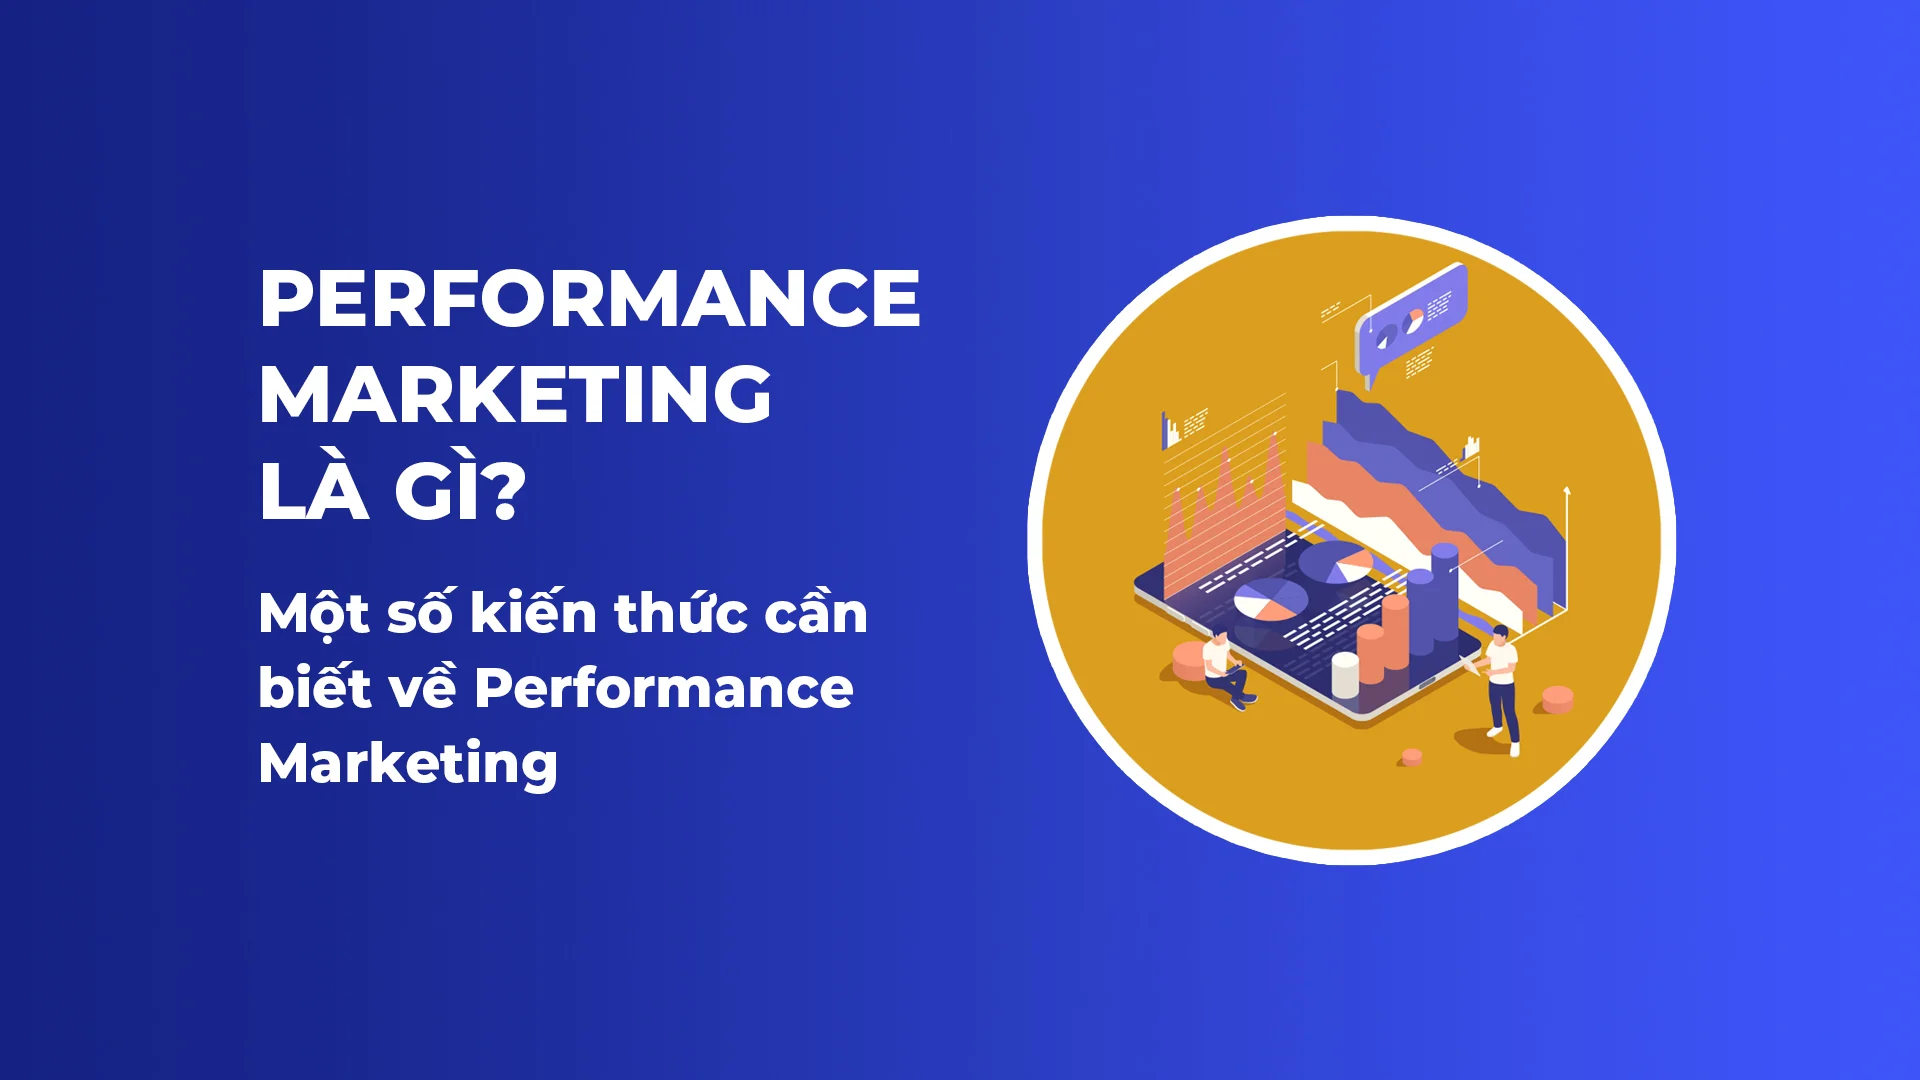 Digital Performance Marketing là gì? Tìm hiểu định nghĩa và ứng dụng hiệu quả